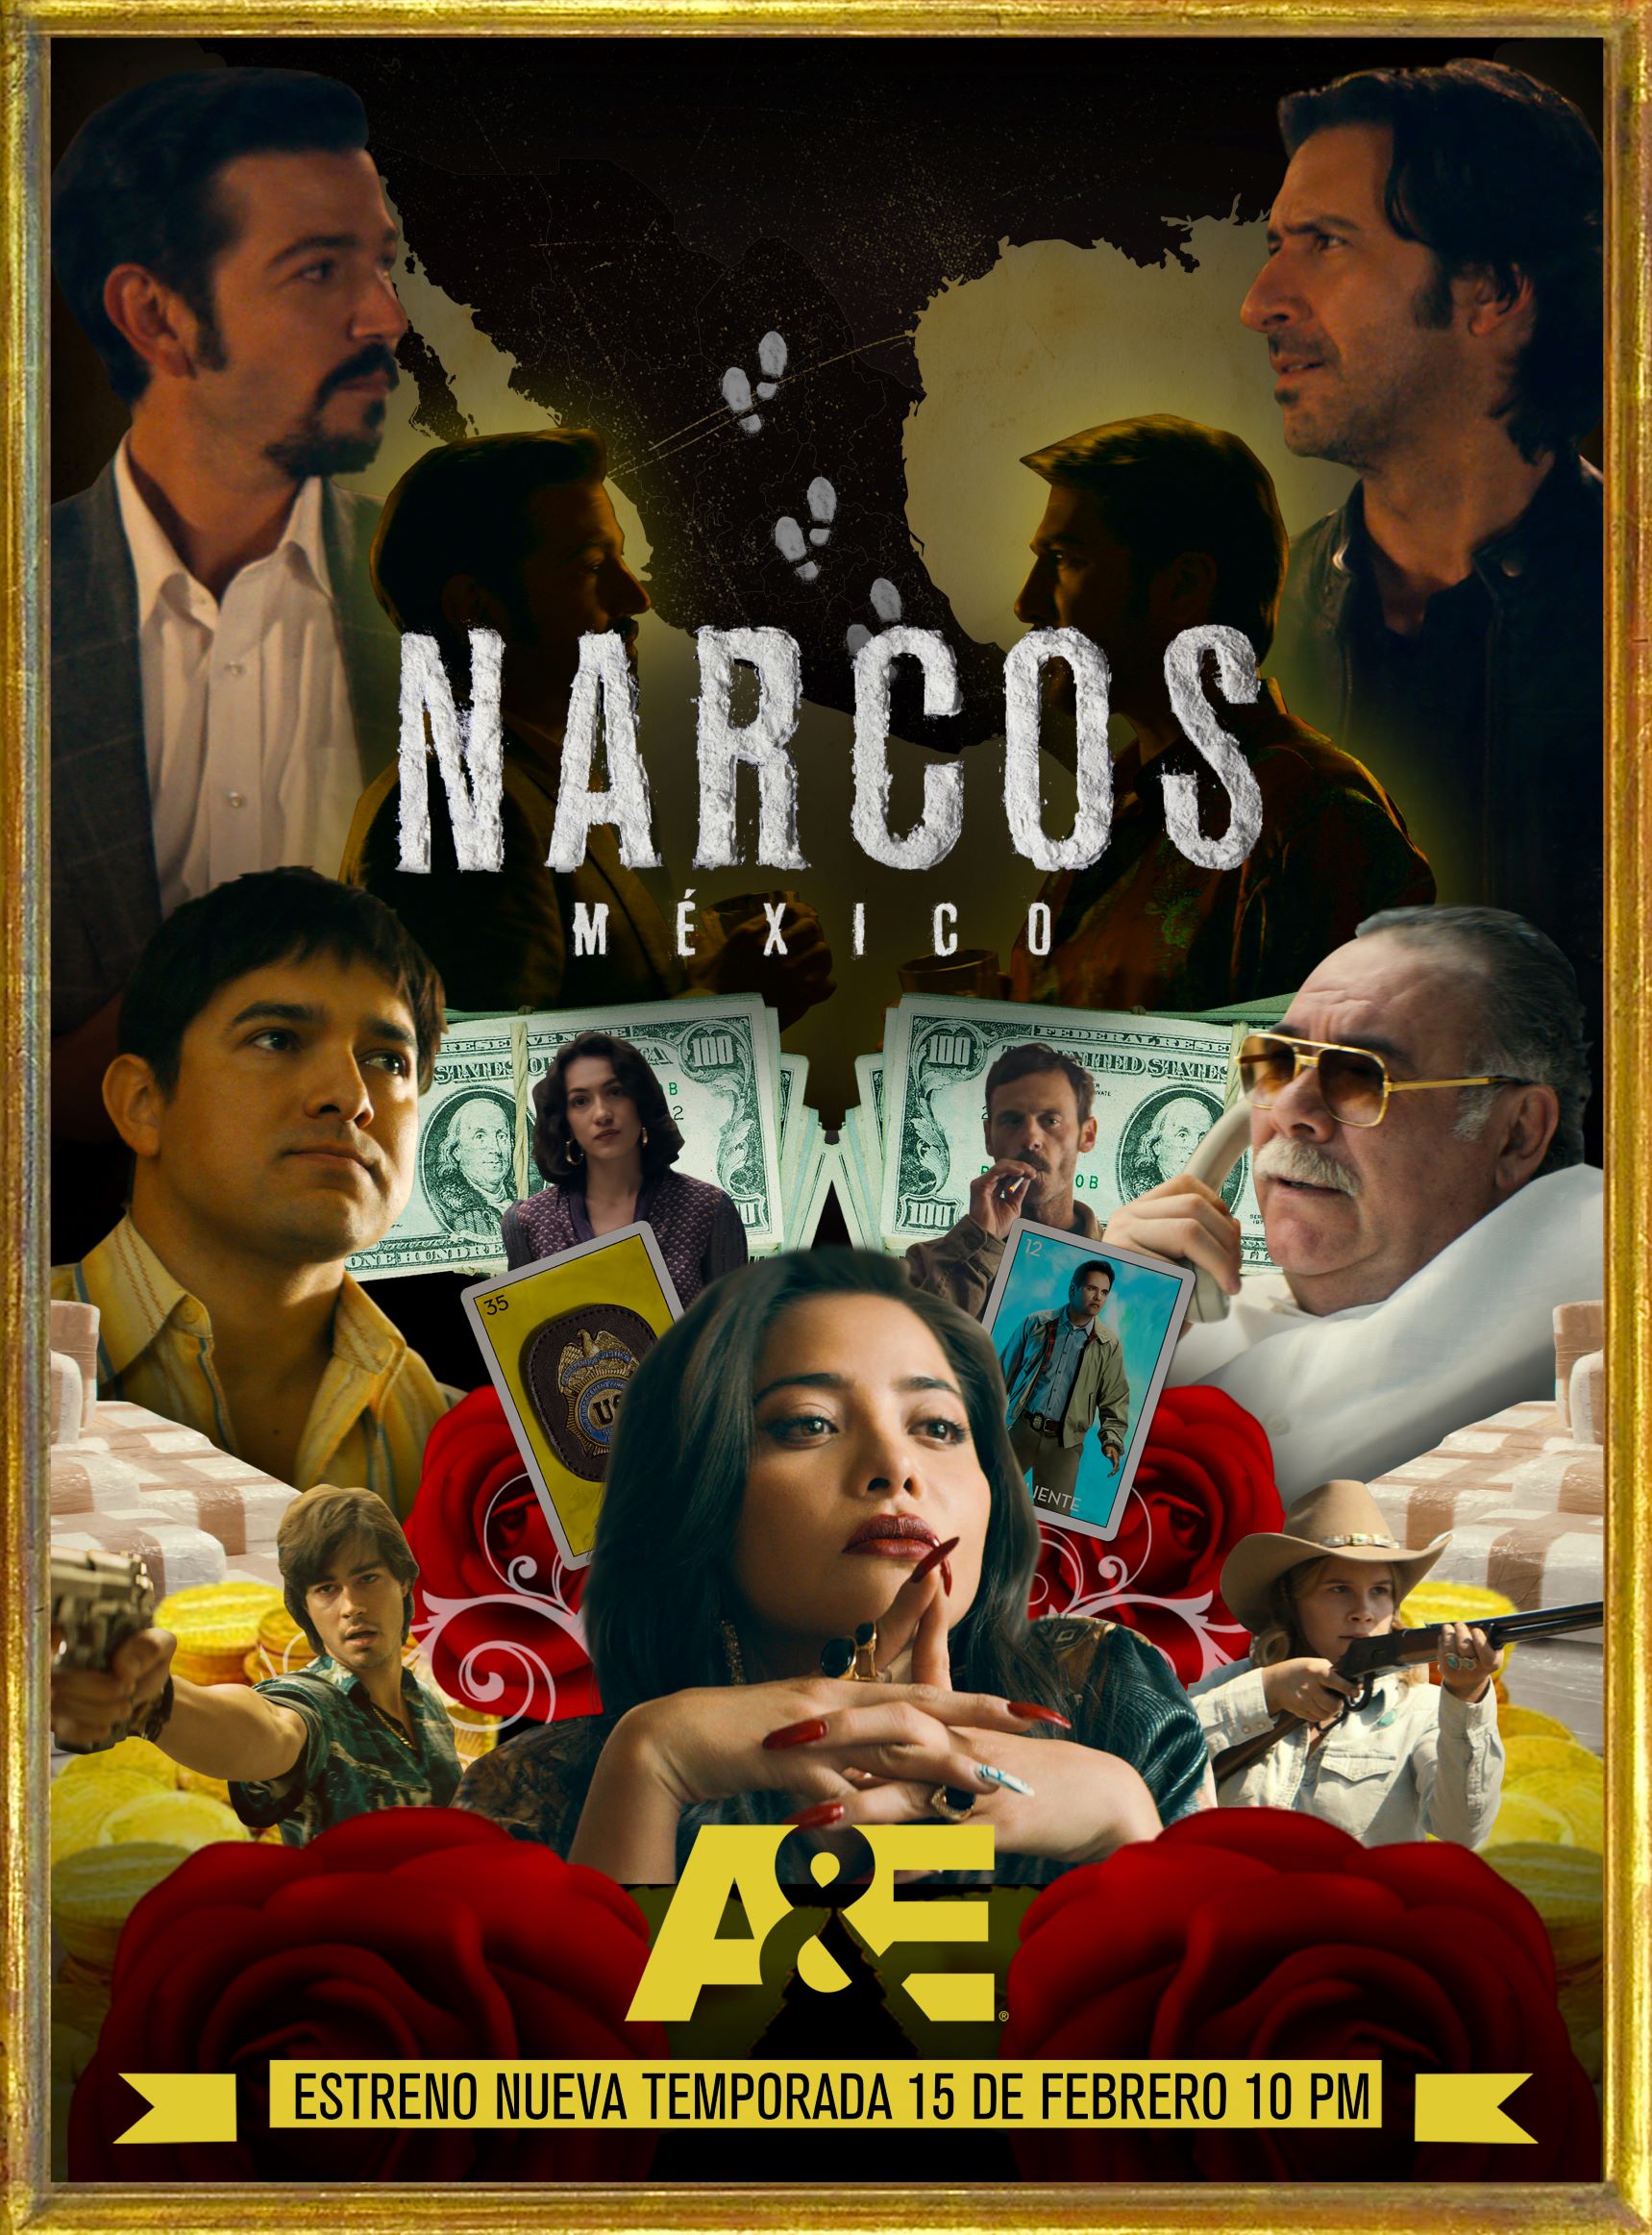 Narco Peliculas Mexicanas 2020 und spritzt